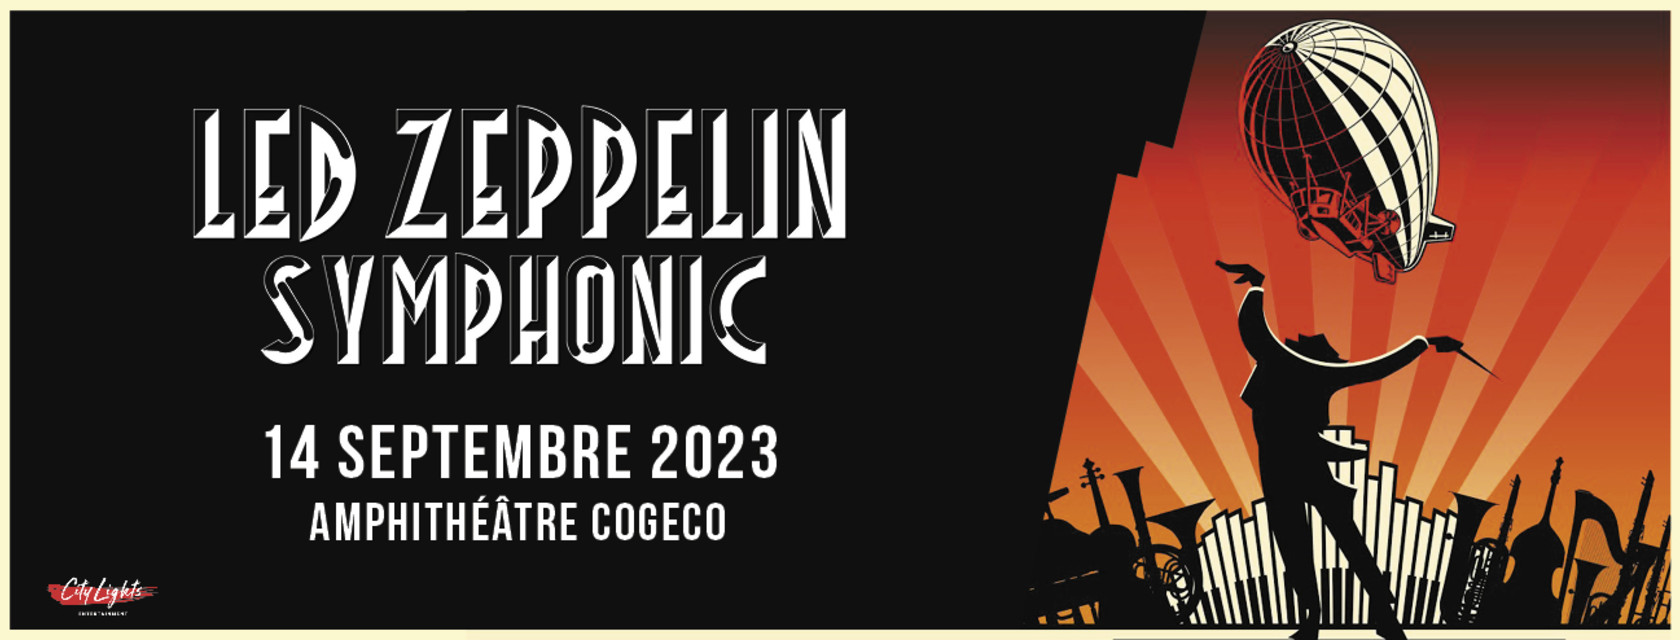 The Led Zeppelin Symphonic world tour stops at the Amphitheatre Cogeco in Trois-Rivières!